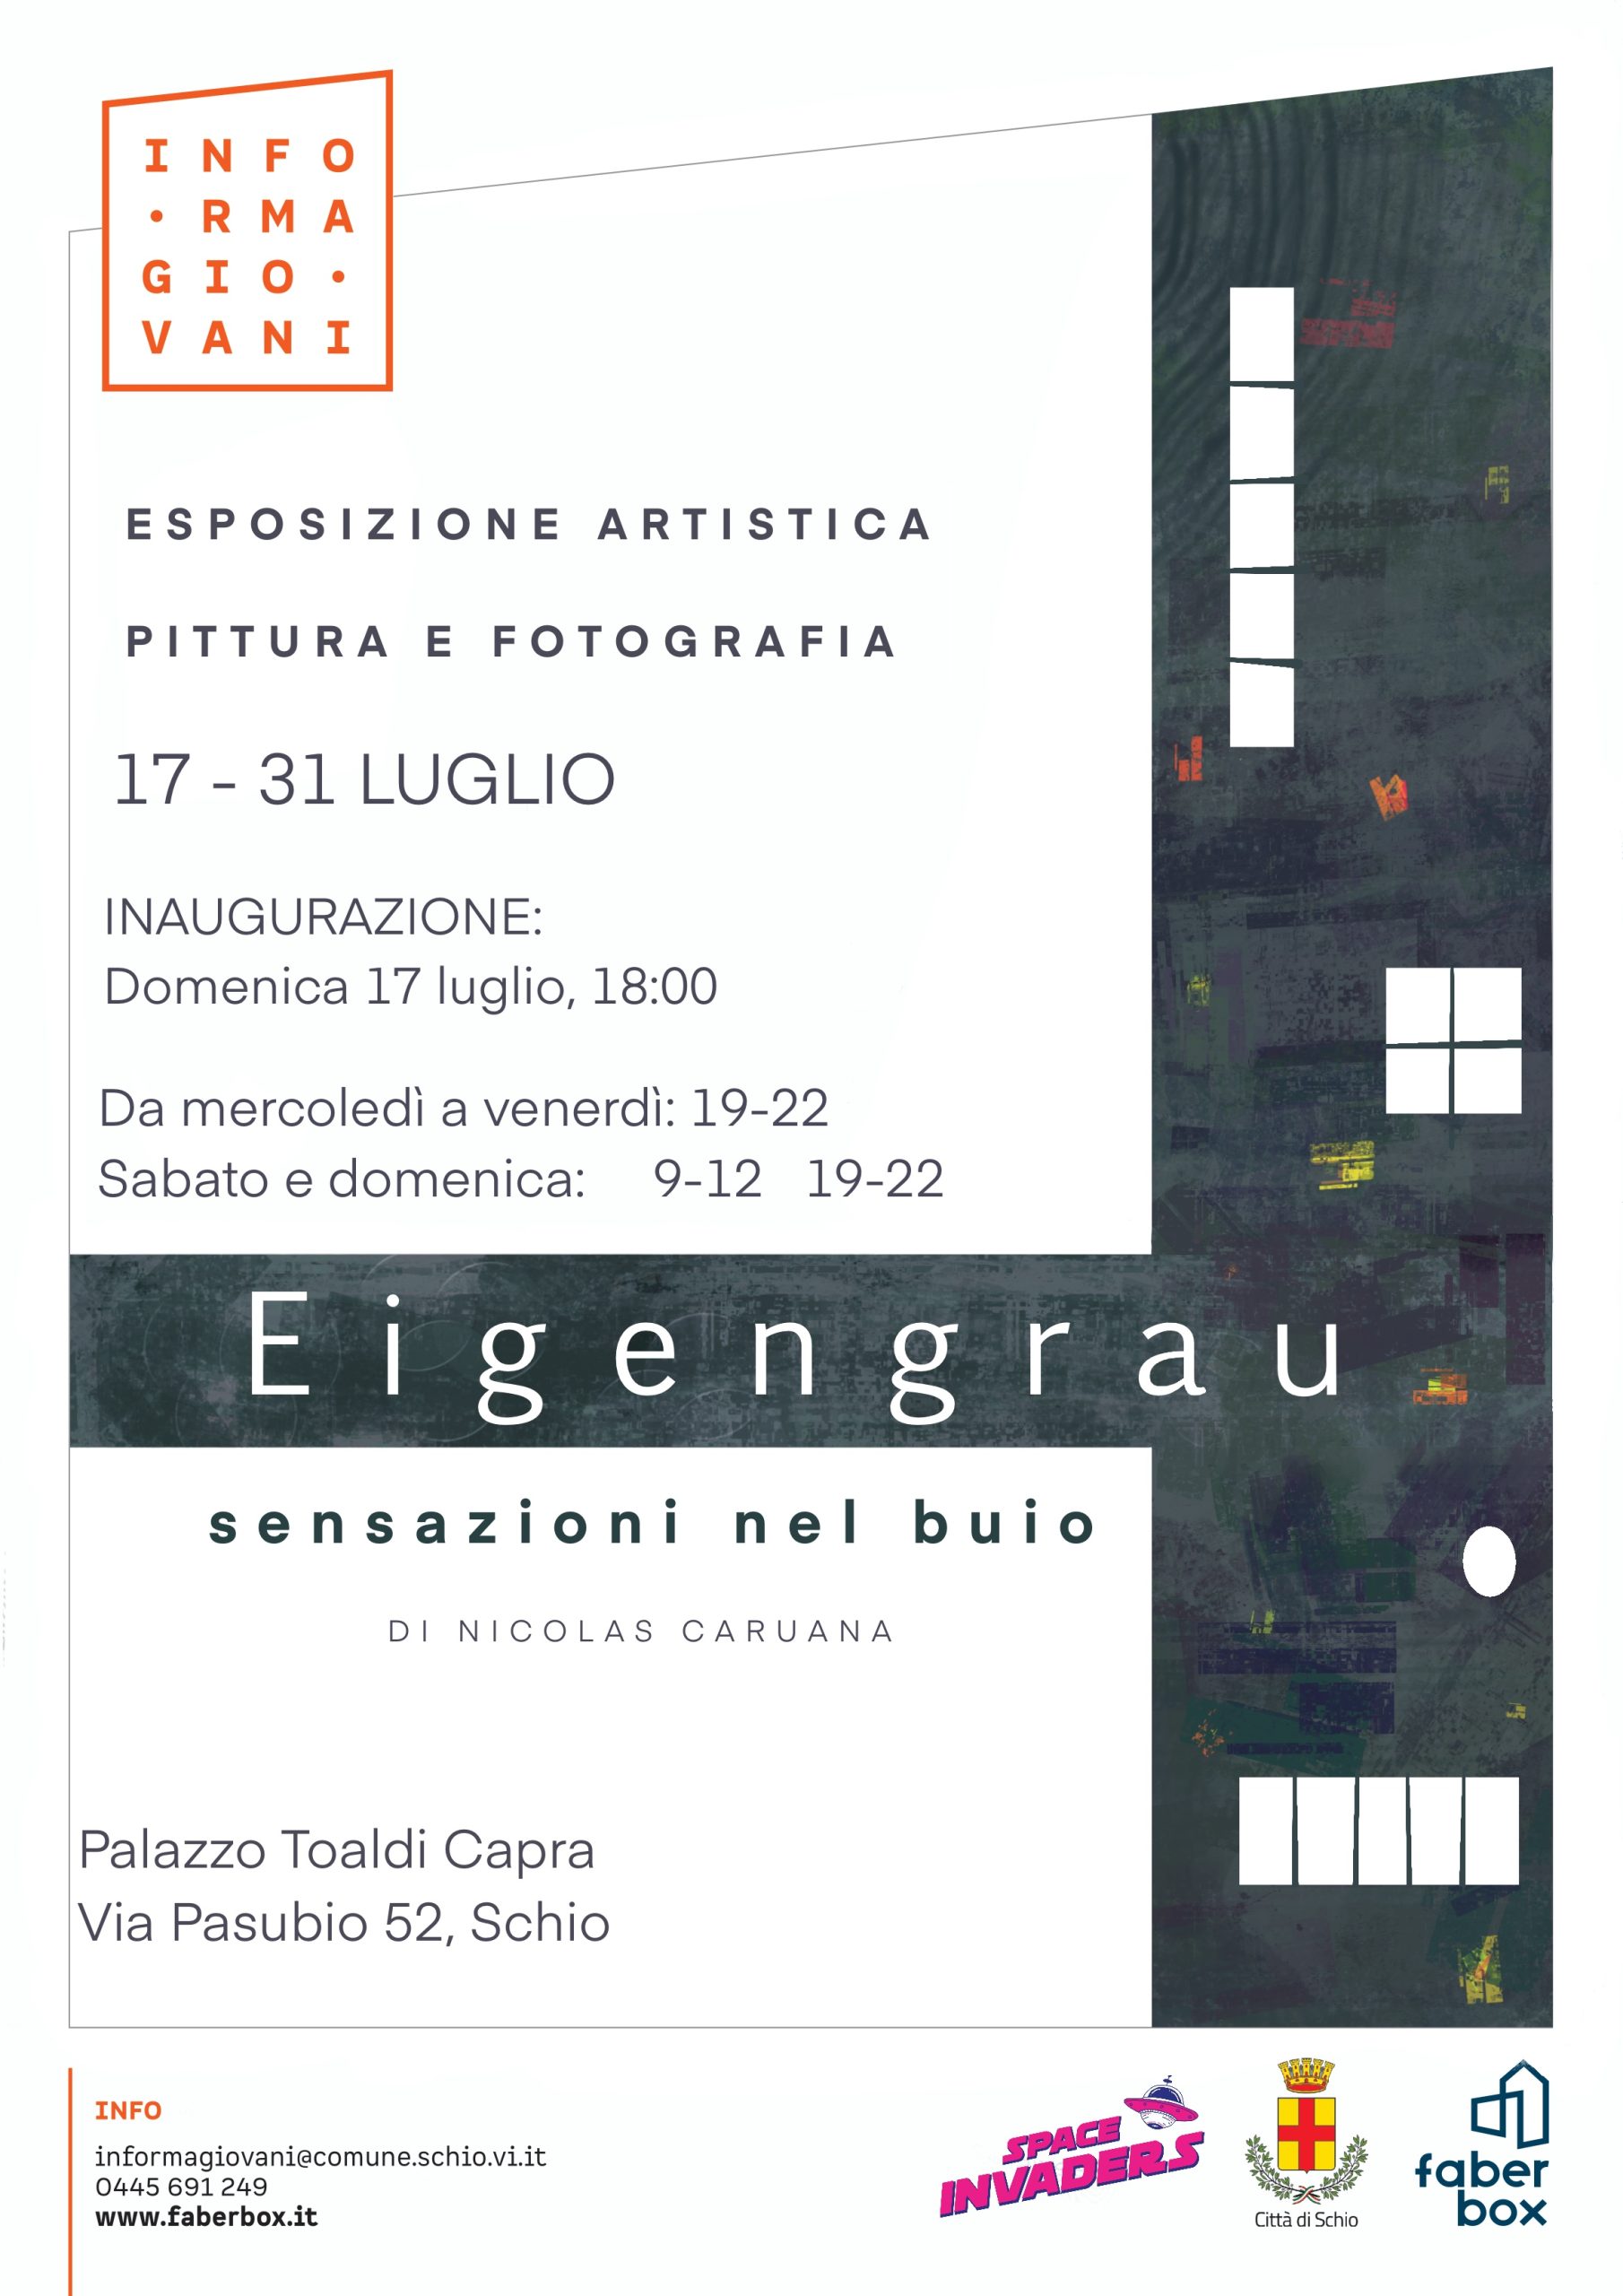 EIGENGRAU |esposizione artistica al Toaldi Capra